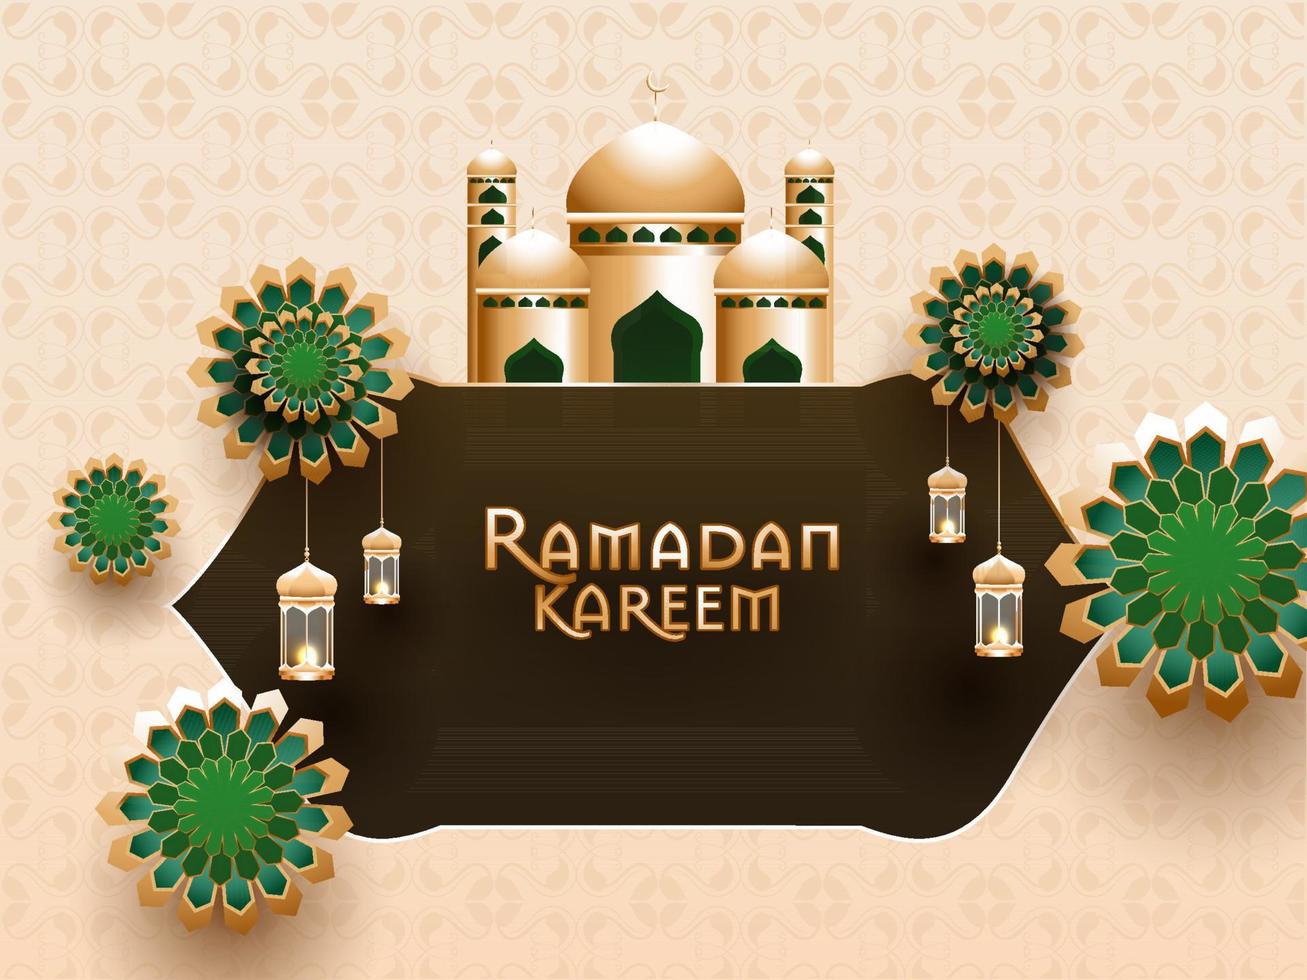 islâmico piedosos mês do Ramadã kareem conceito com lindo mesquita e floral padronizar e suspensão iluminado lanternas. vetor